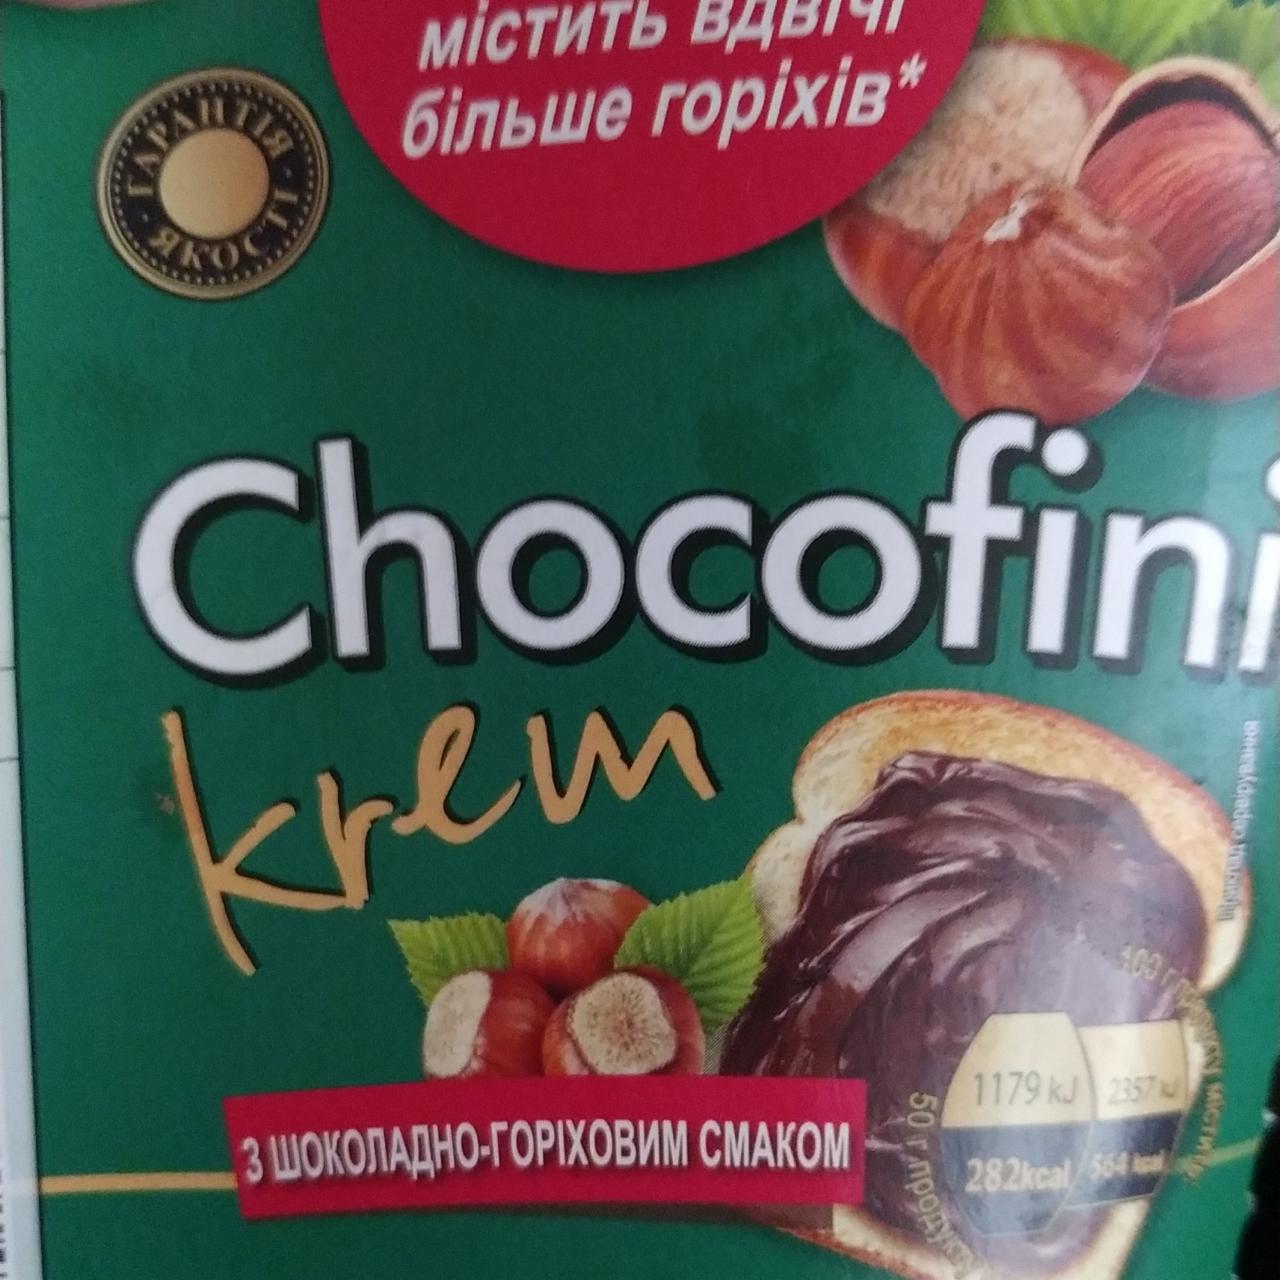 Zdjęcia - Krem czekoladowy orzechowy Choco fini